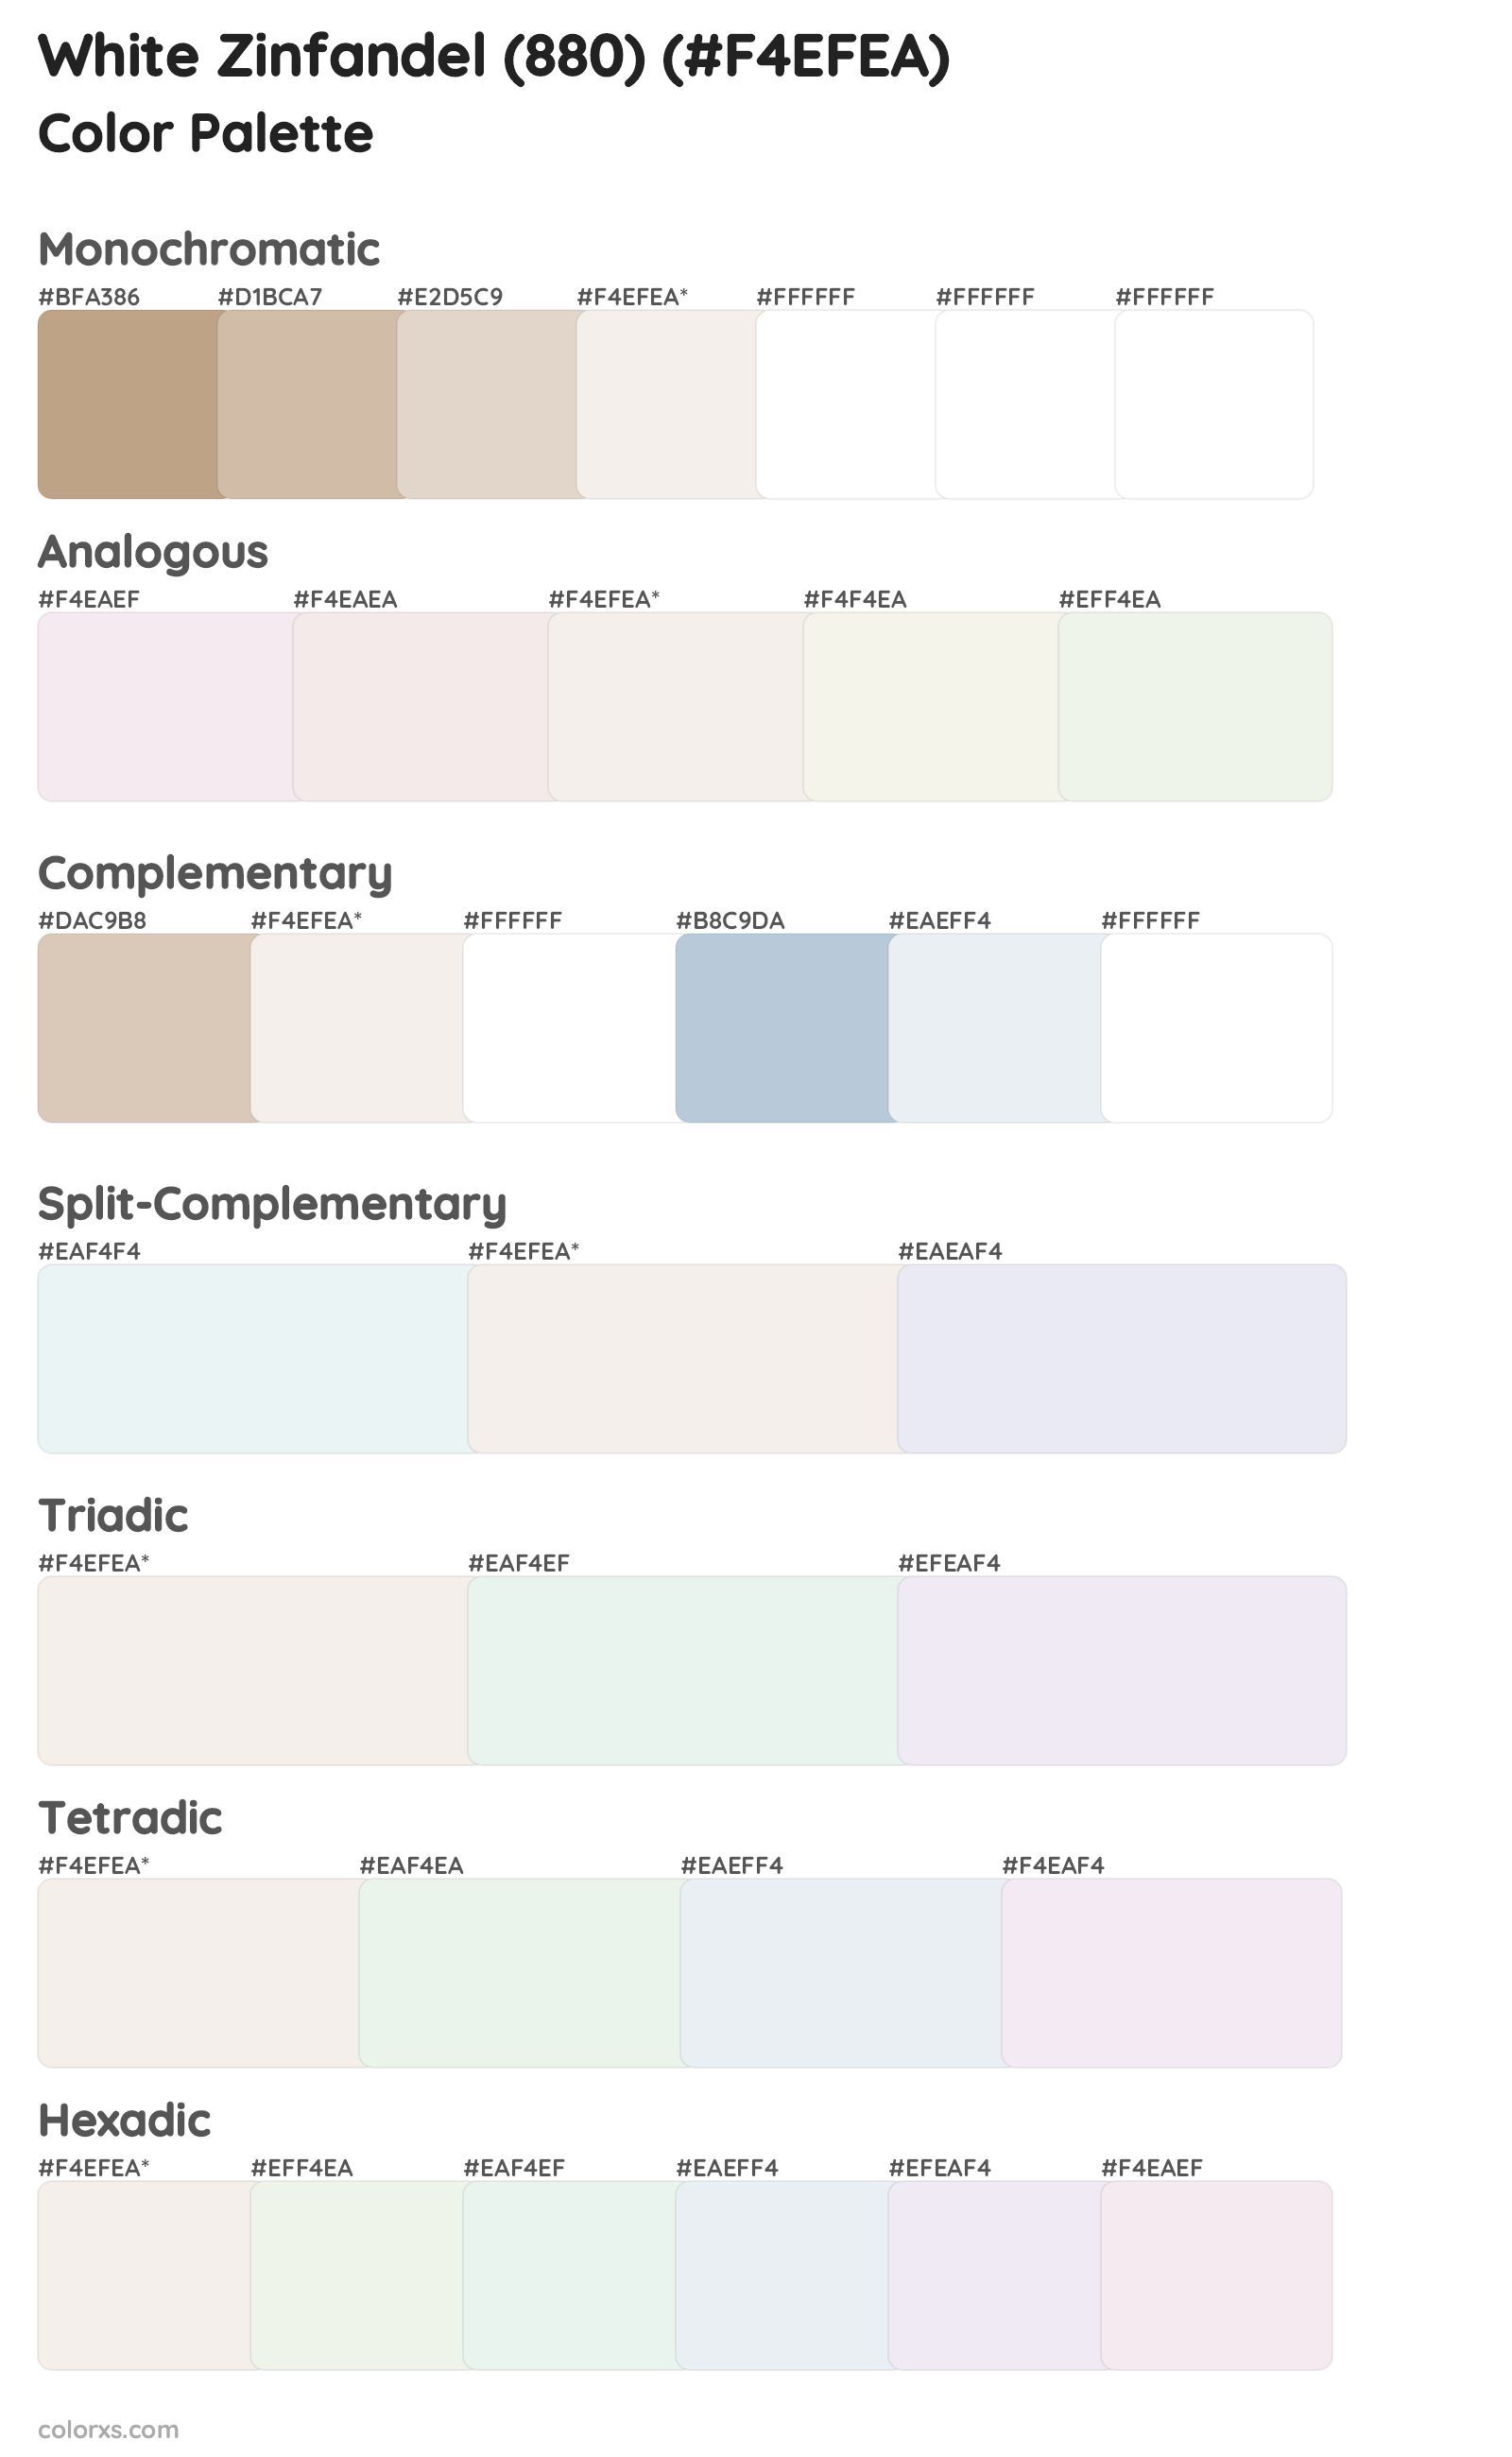 White Zinfandel (880) Color Scheme Palettes